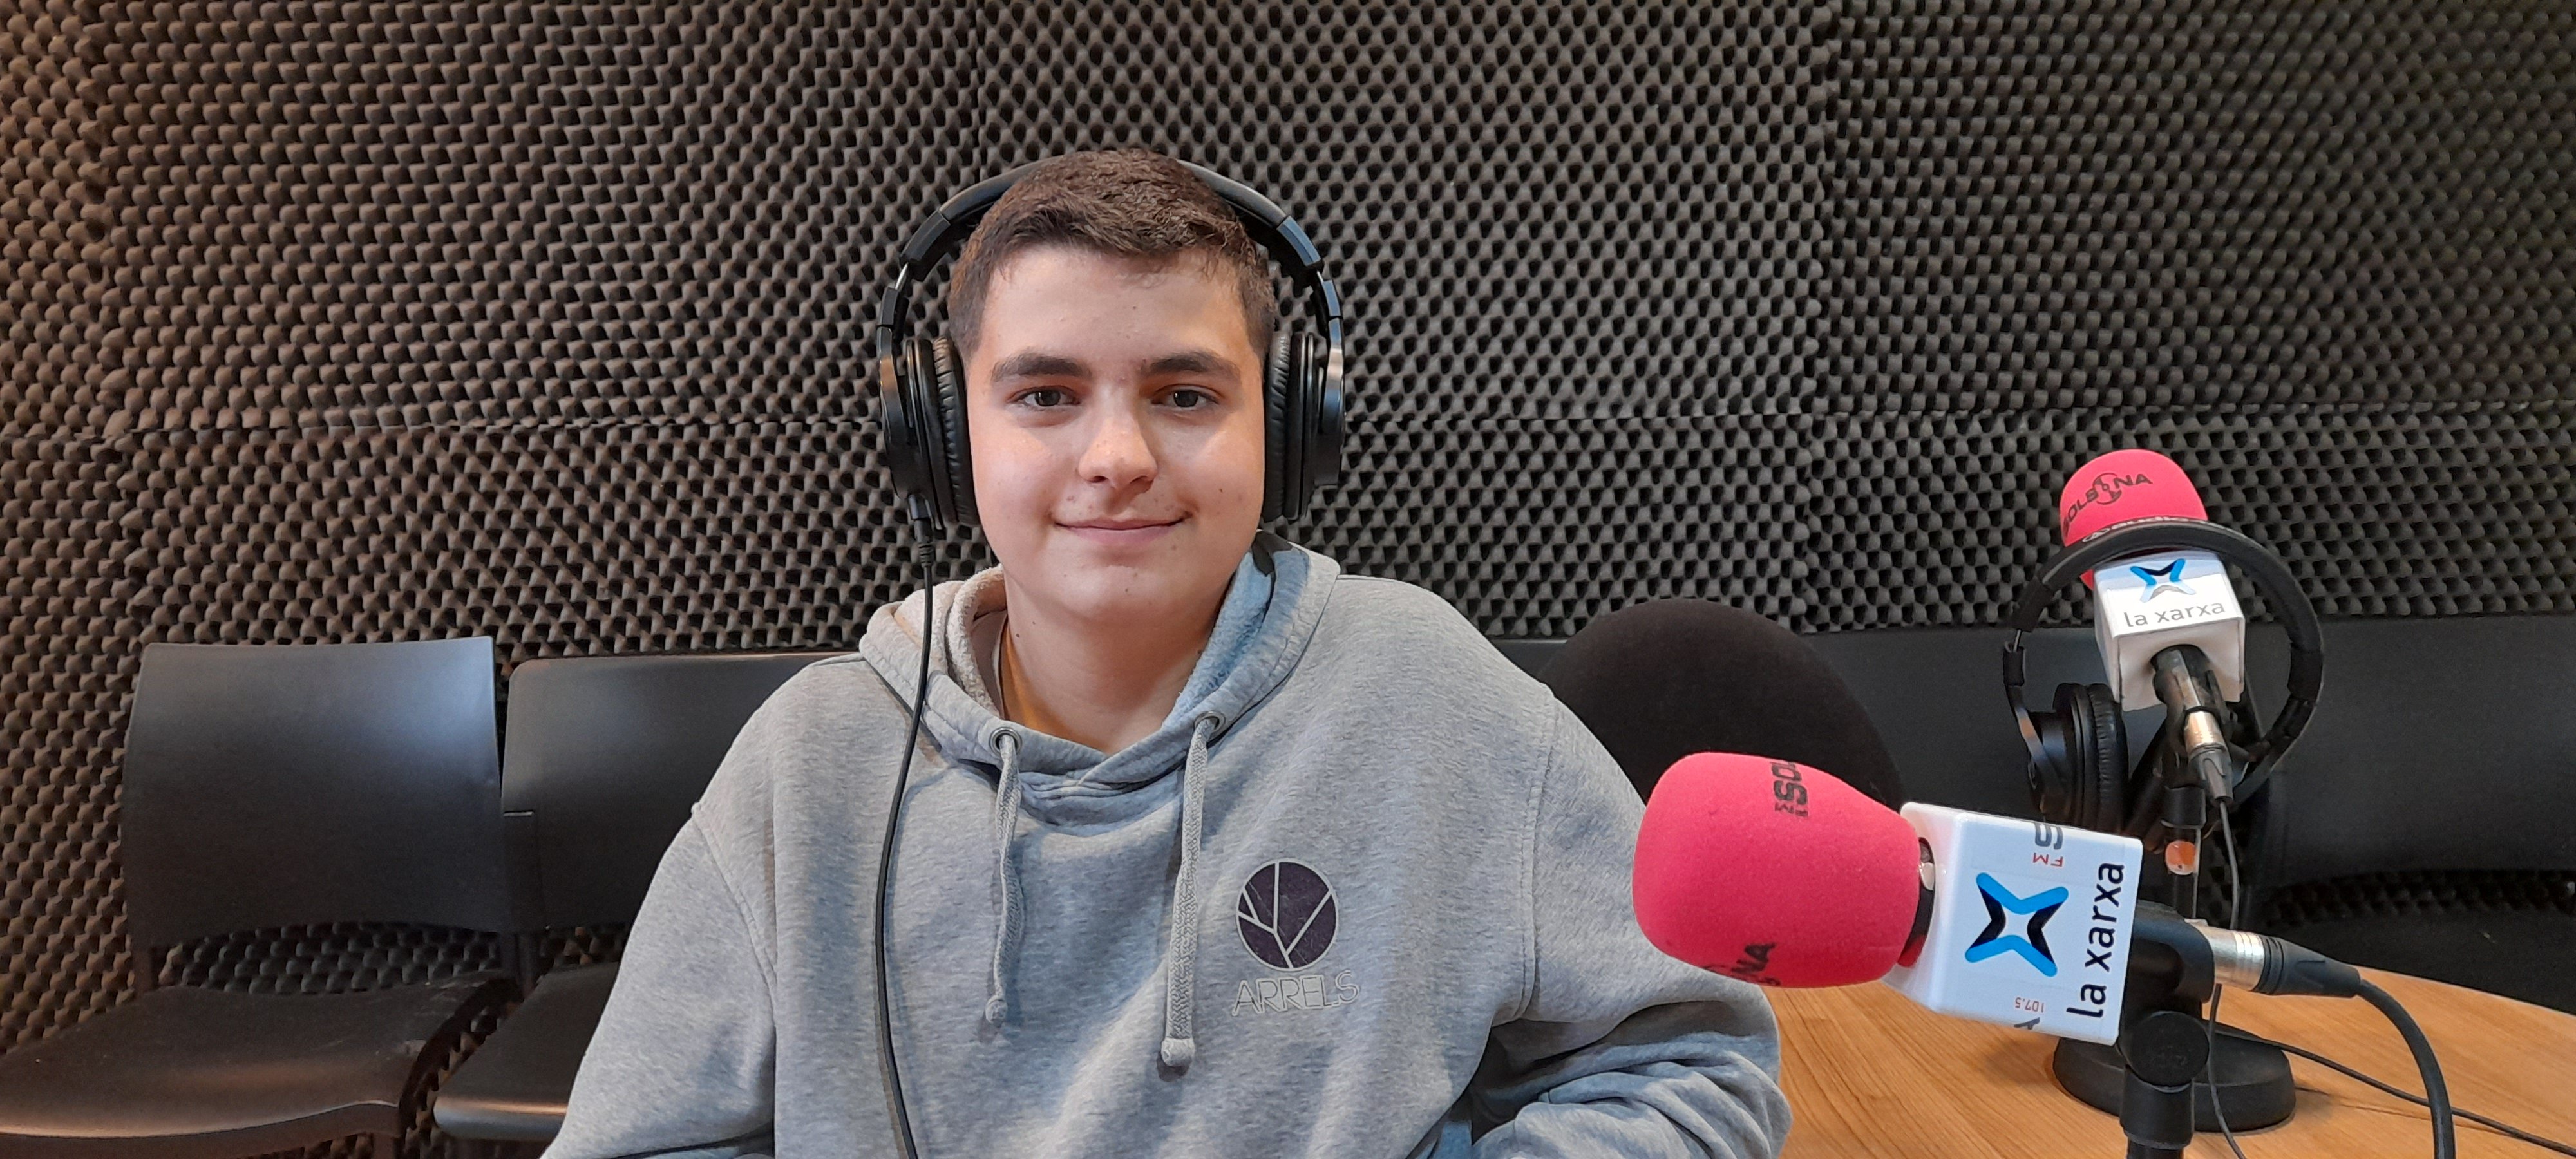 Jordi Montanyà, el noi de 14 anys que és compositor de sardanes